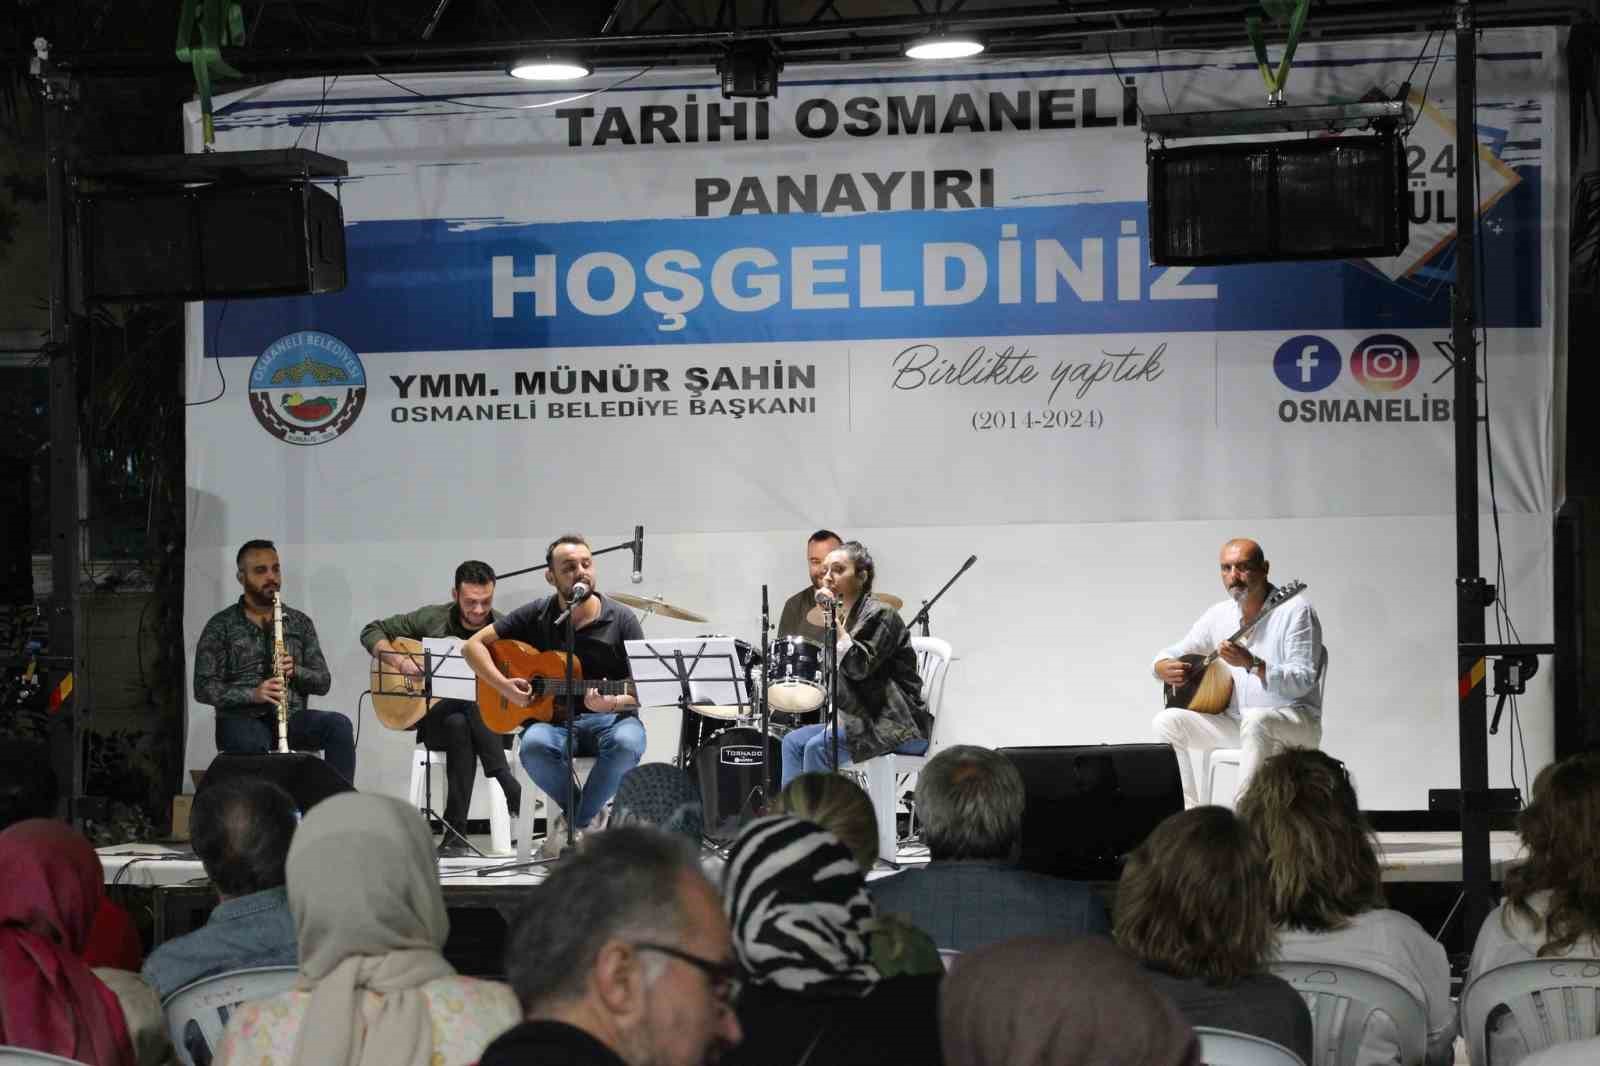 Osmaneli Panayırı renkli görüntülere ev sahipliği yapmaya devam ediyor